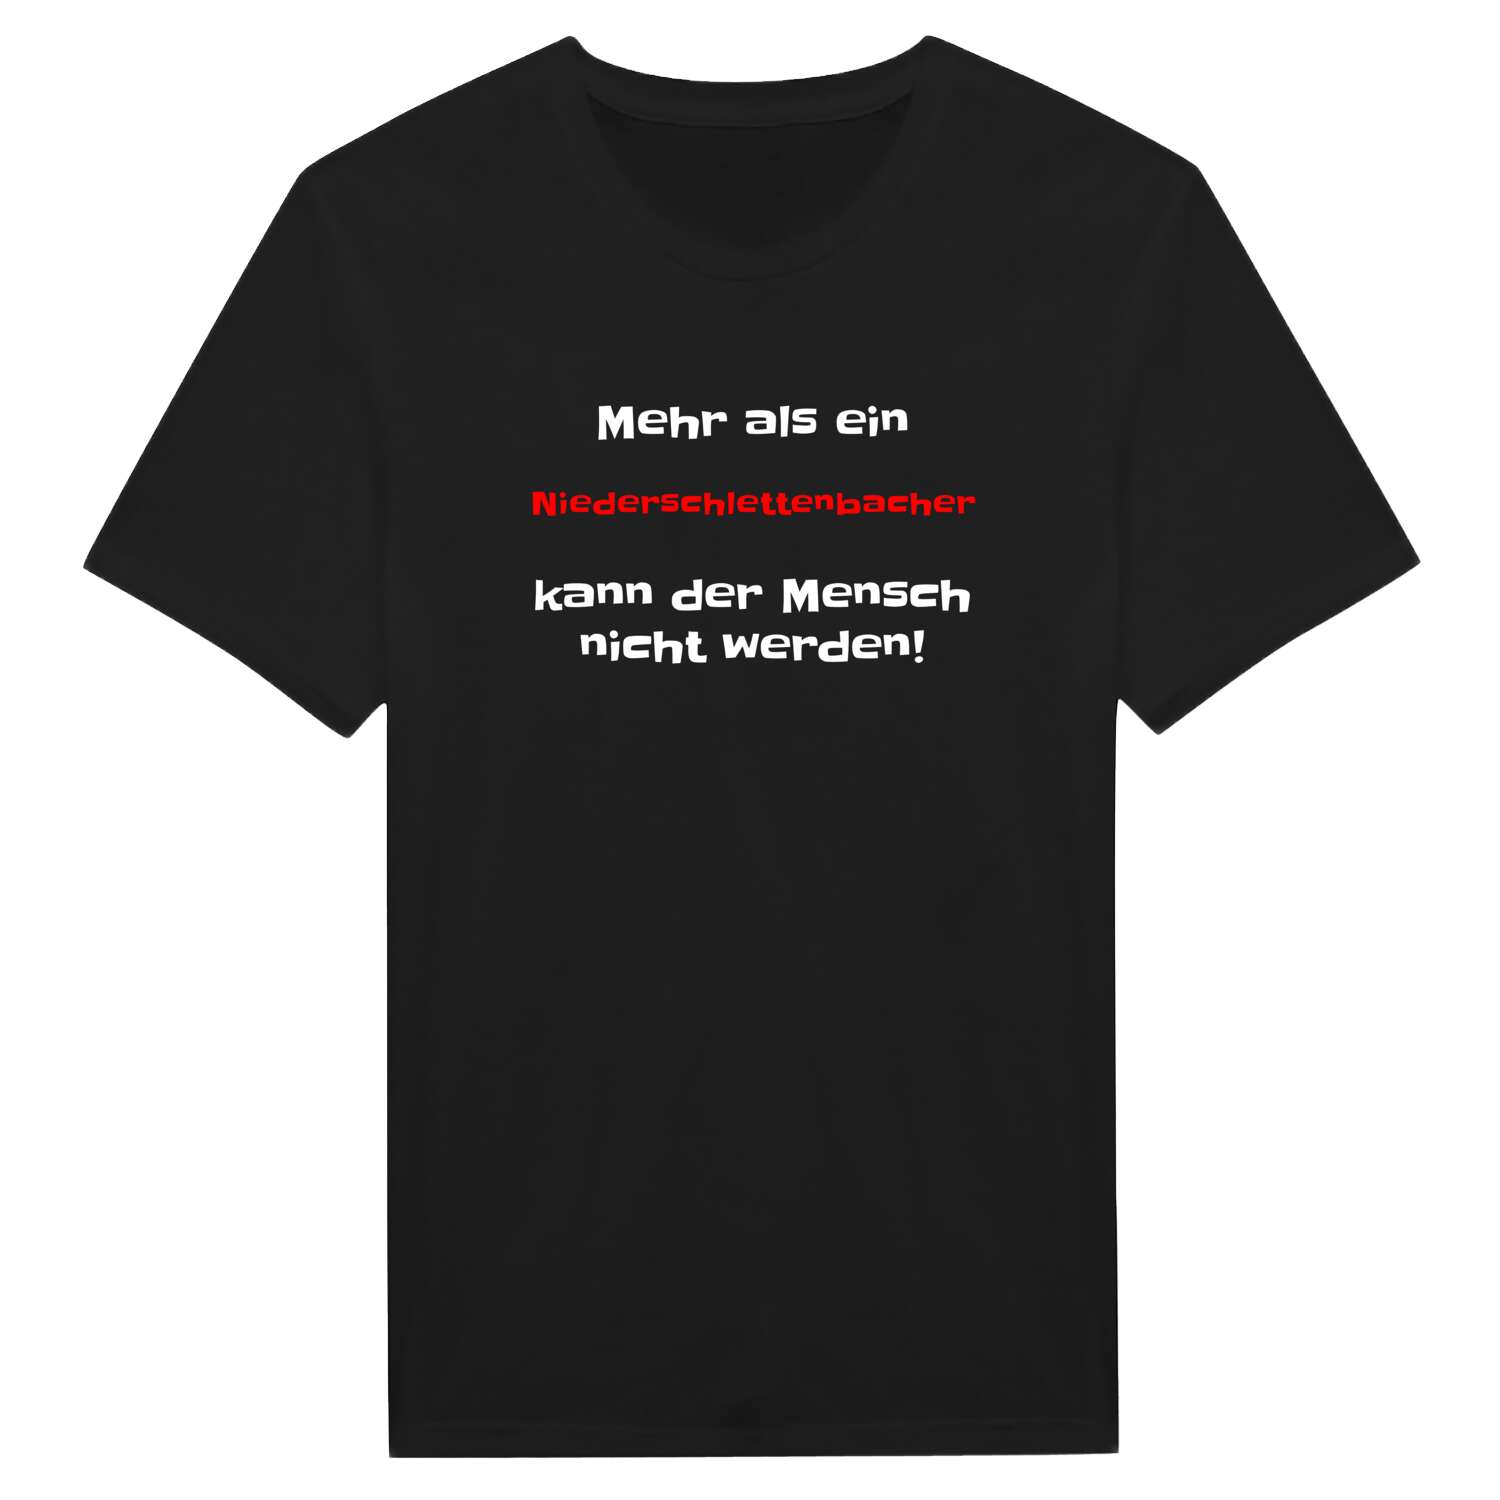 Niederschlettenbach T-Shirt »Mehr als ein«